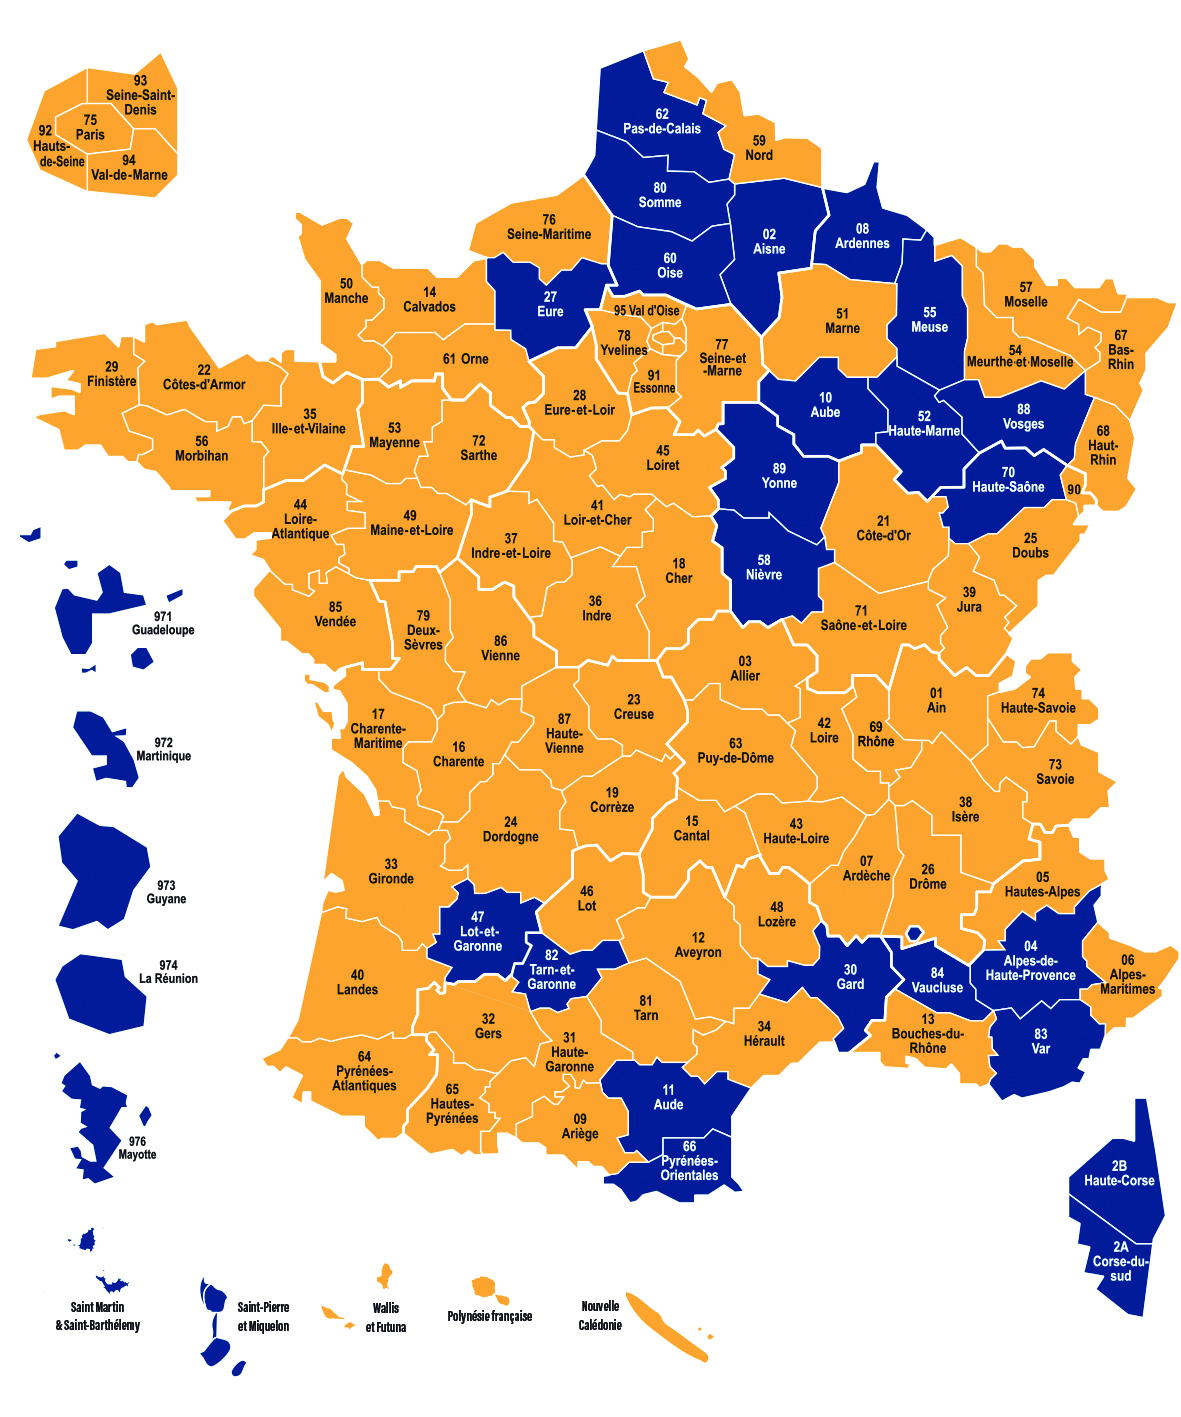 Carte de France représentant les départements et territoires d'Outre-mer où Emmanuel Macron (en jaune) et Marine Le Pen (en bleu) sont arrivés en tête.